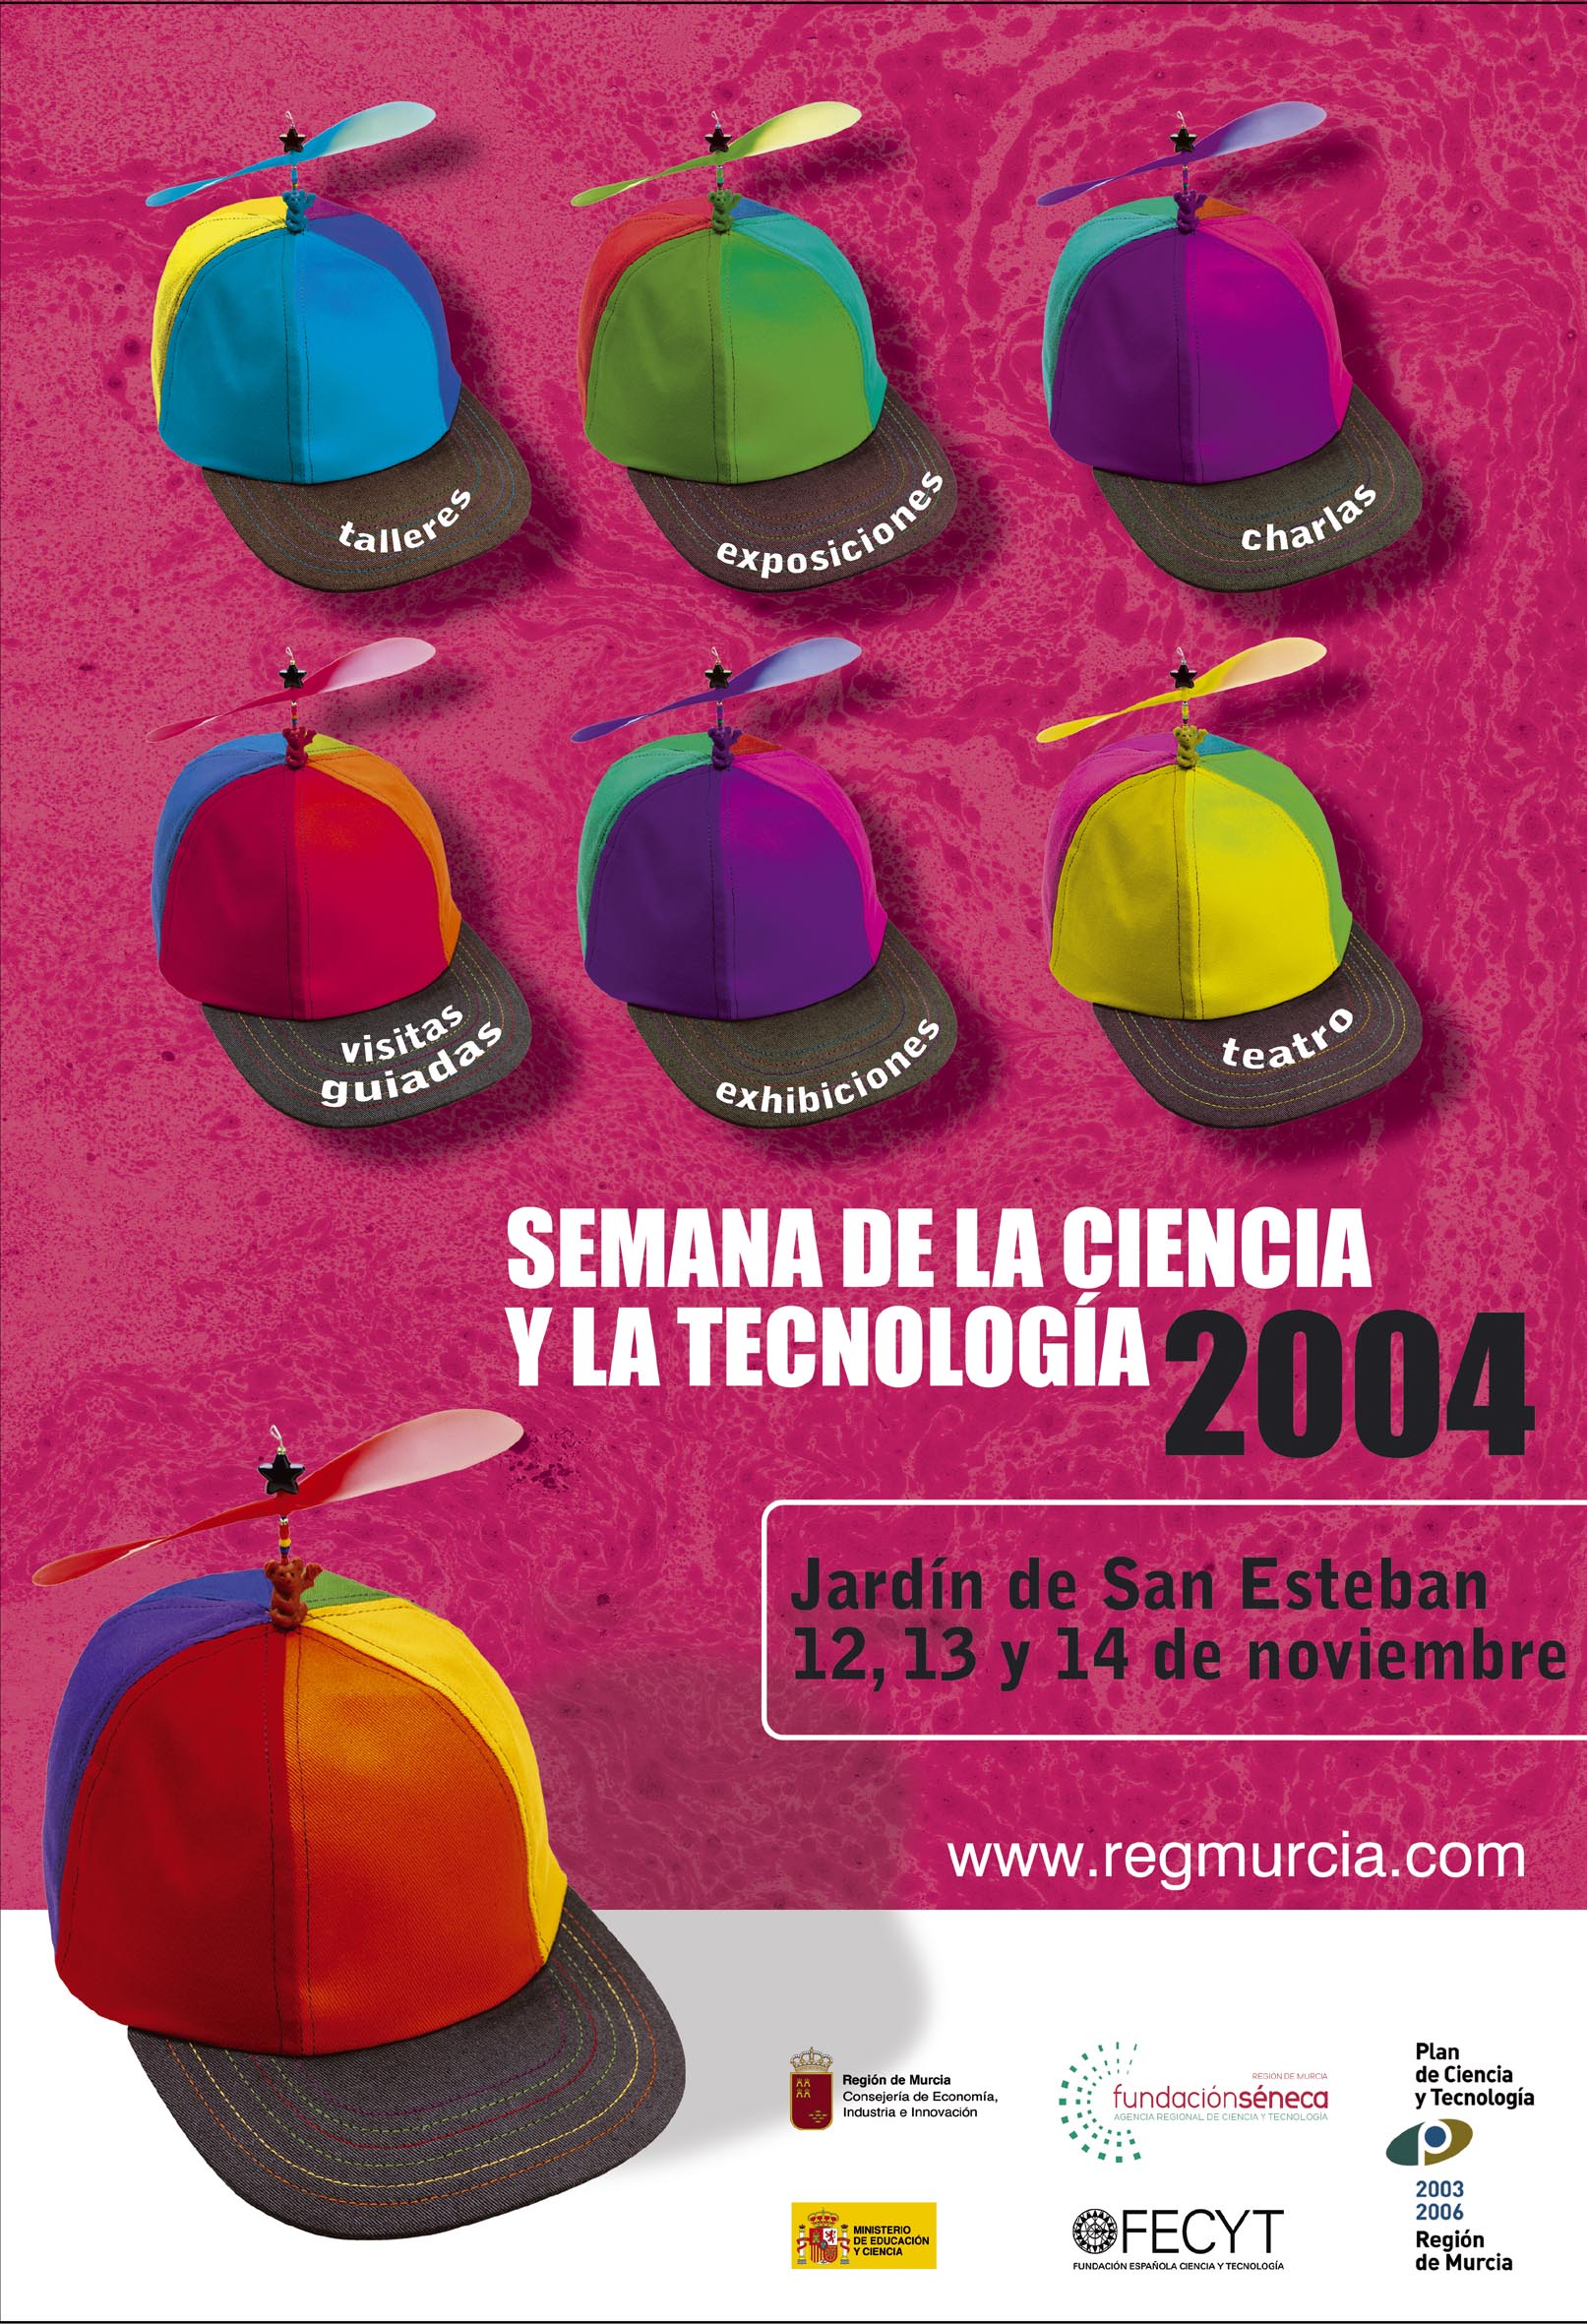 Semana de la Ciencia y la Tecnología 2004